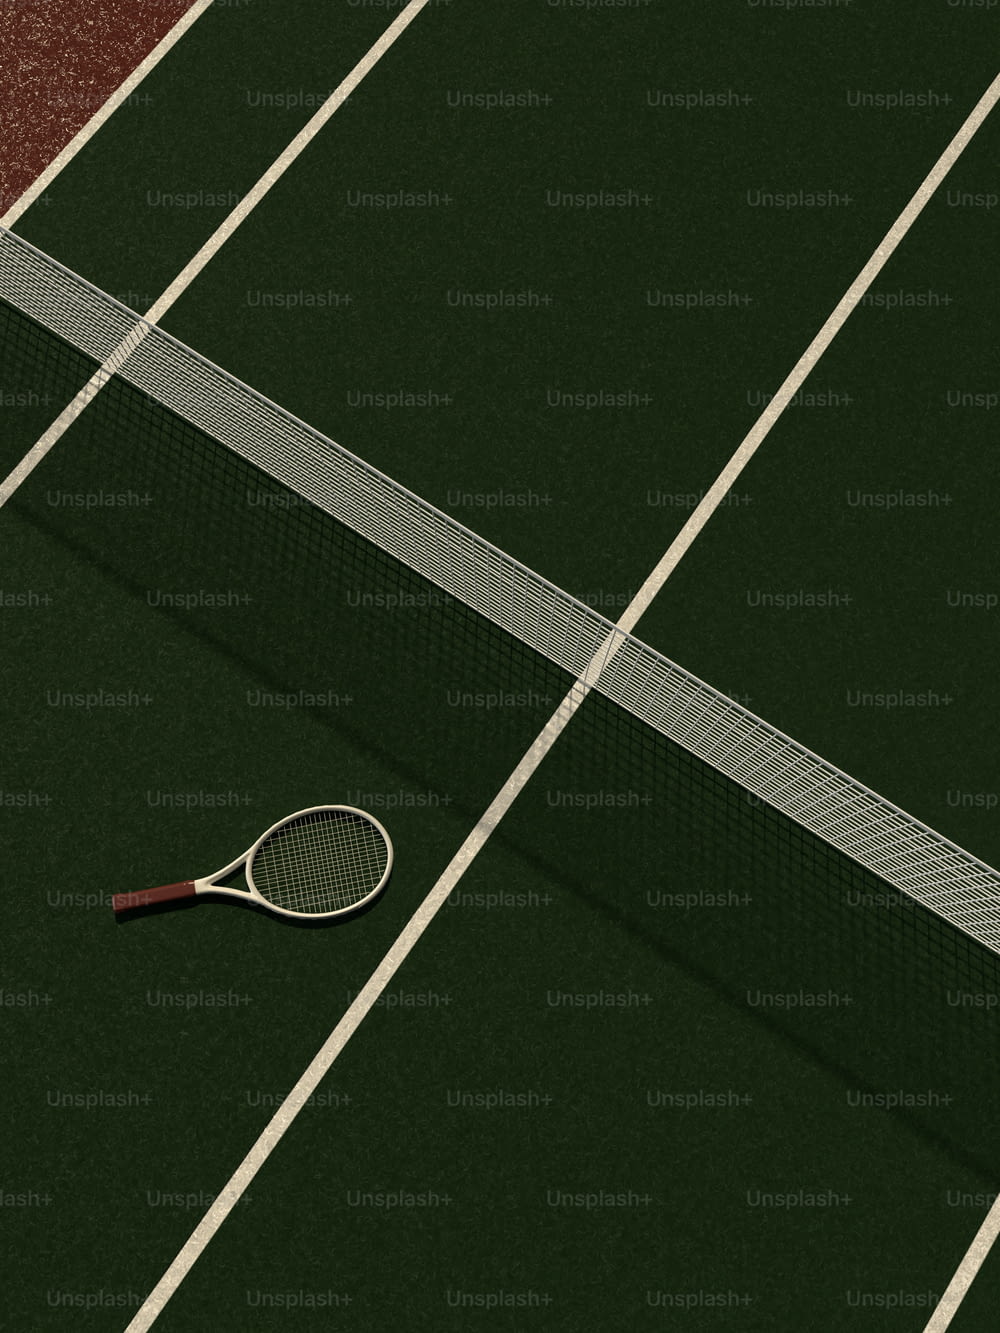 una raqueta de tenis y una pelota en una cancha de tenis